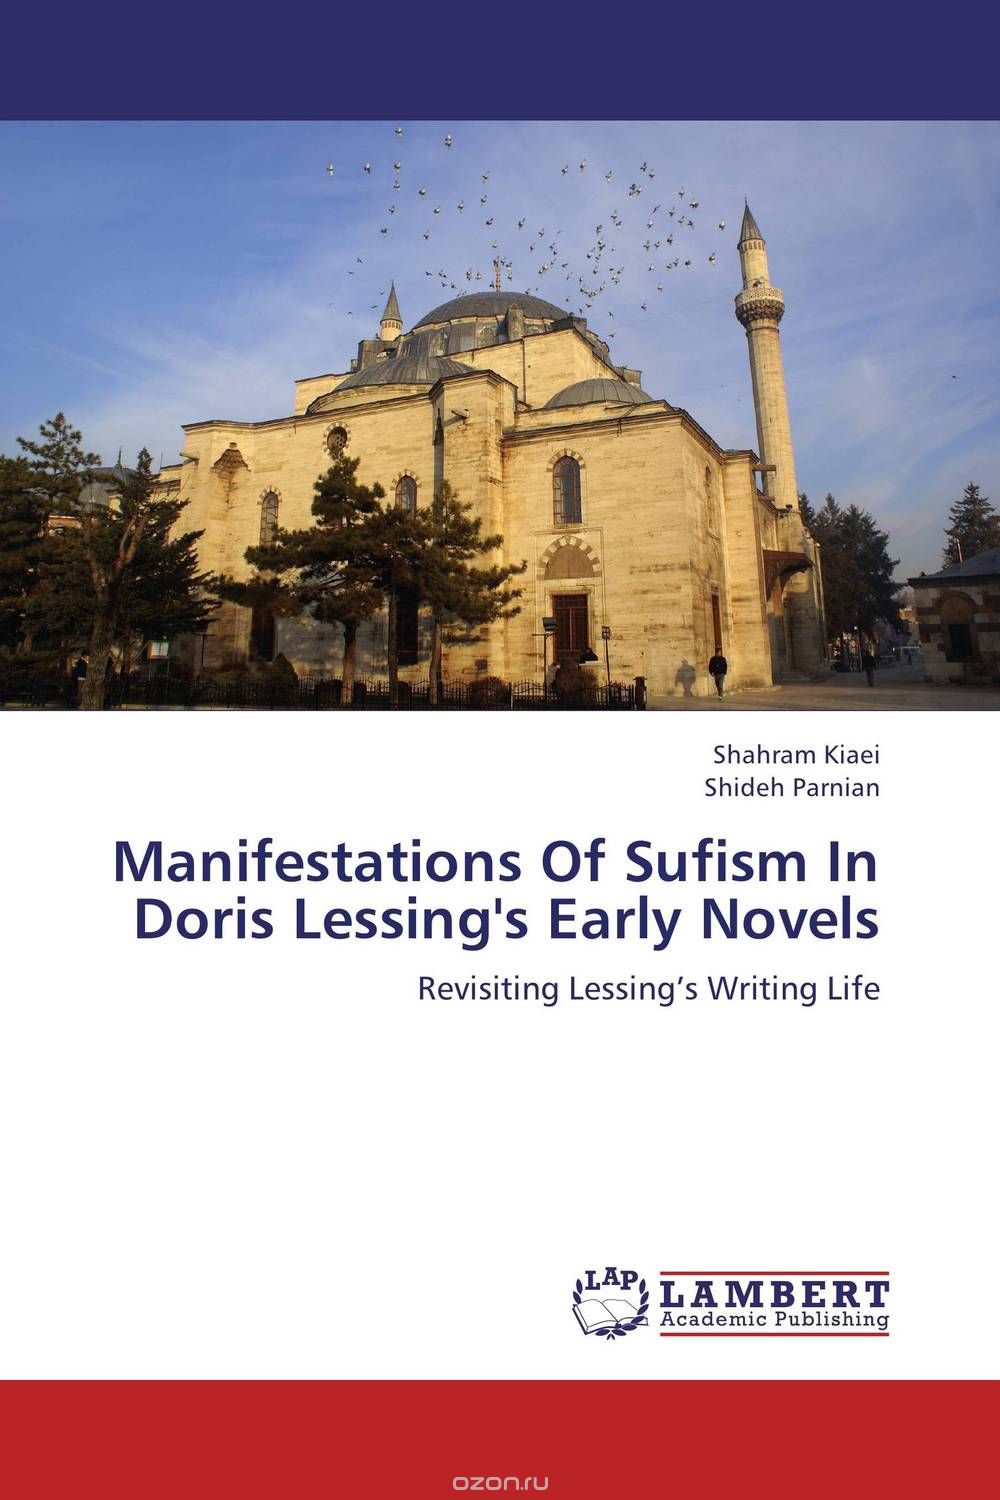 Скачать книгу "Manifestations Of Sufism In Doris Lessing's Early Novels"